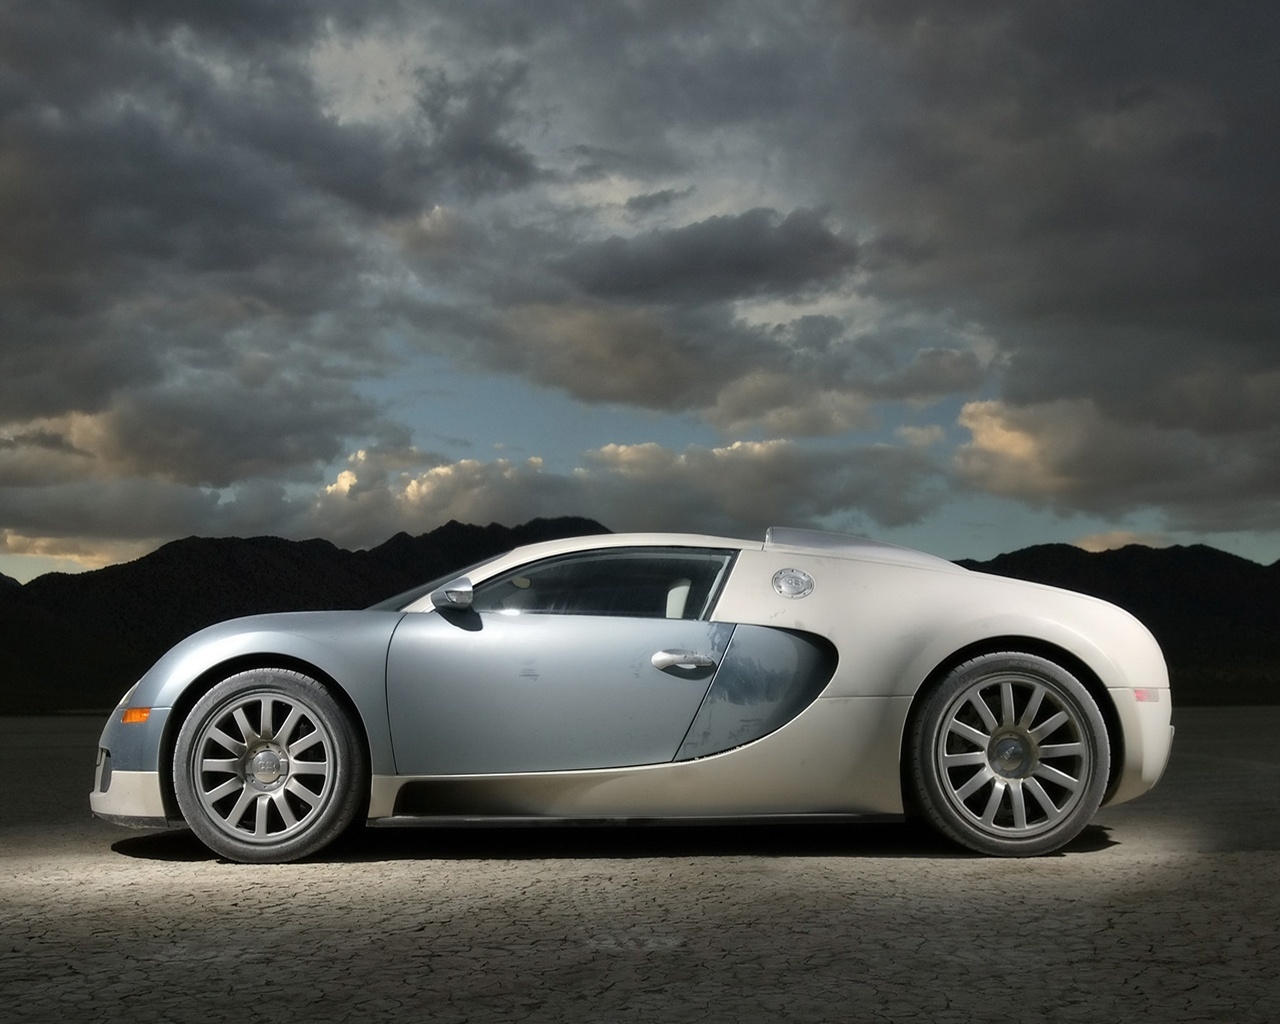 Bugatti Veyron 2007 - Side for 1280 x 1024 resolution